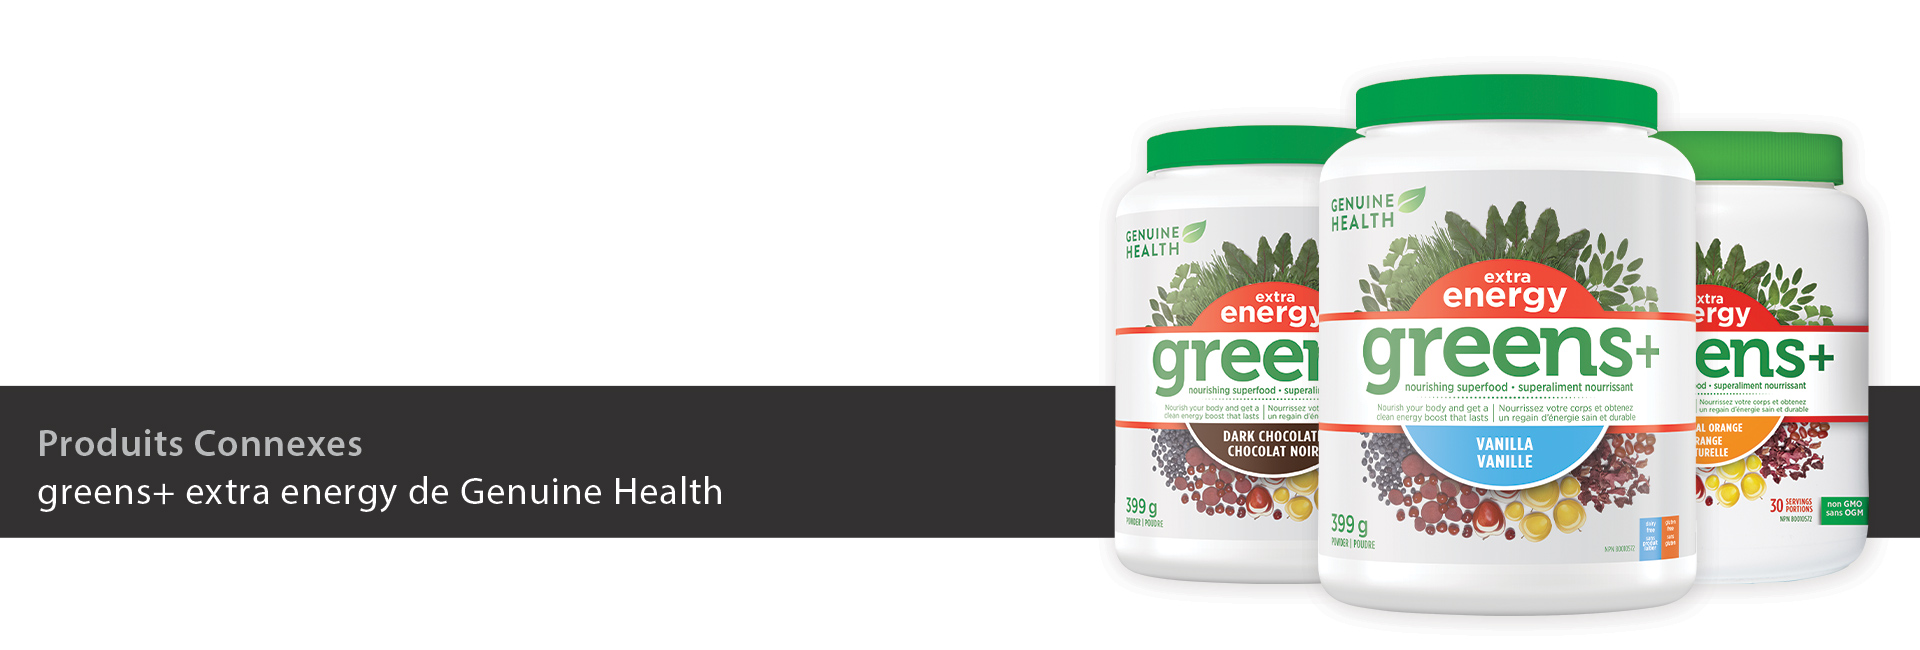 greens+ extra energy de Genuine Health